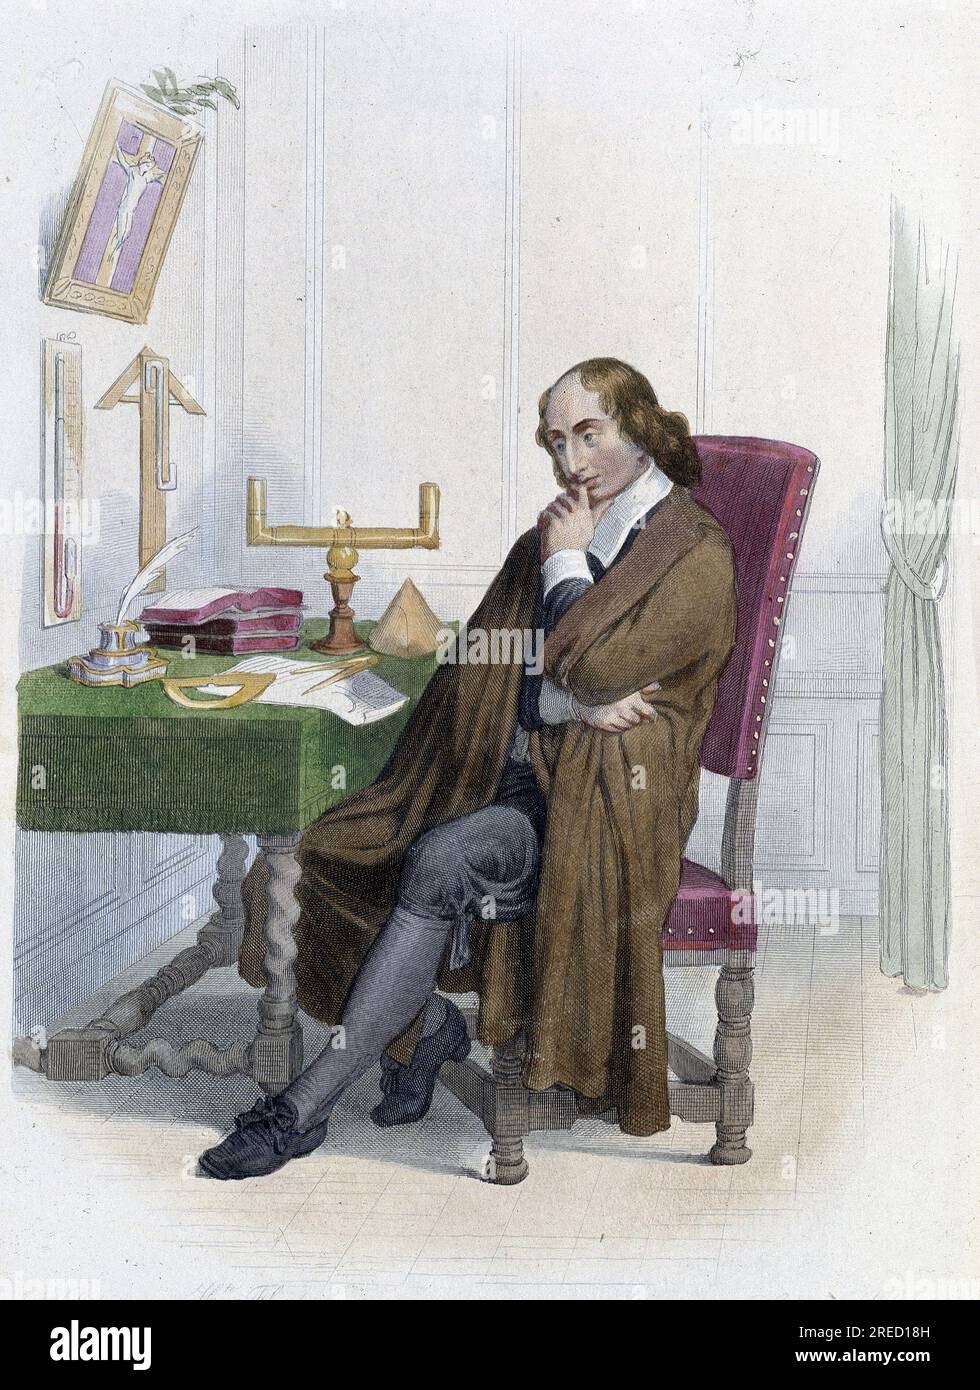 Portrait de Blaise Pascal, philosophe, mathematicien et physicien francais (1623-1662). - in Ed. Mennechet, 'Le Plutarque francais', 1844-1847 Stock Photo